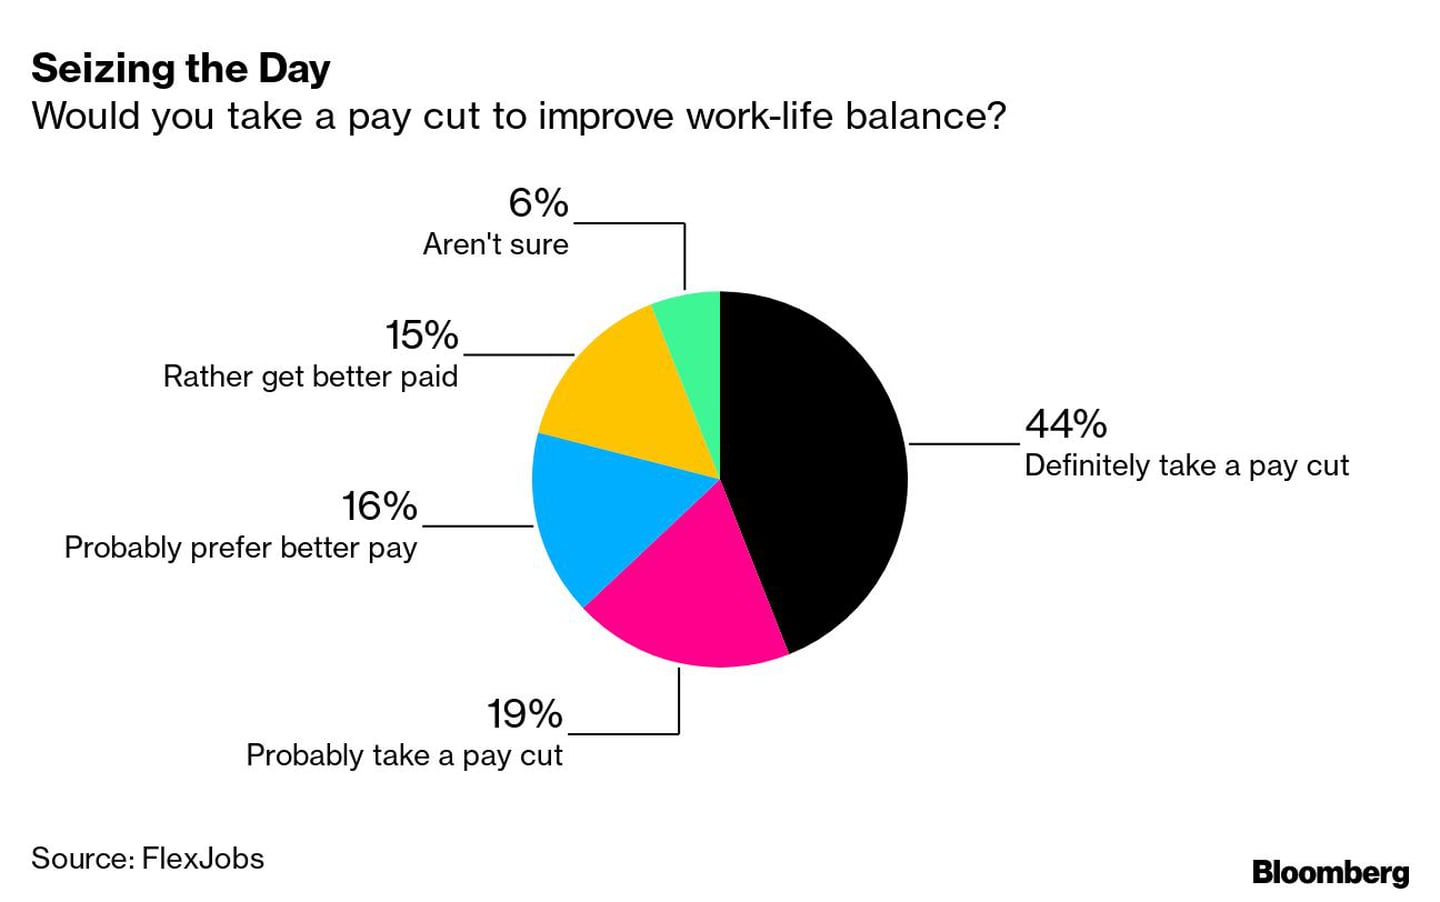  ¿Aceptaría un recorte salarial para mejorar el equilibrio entre vida y trabajo?dfd